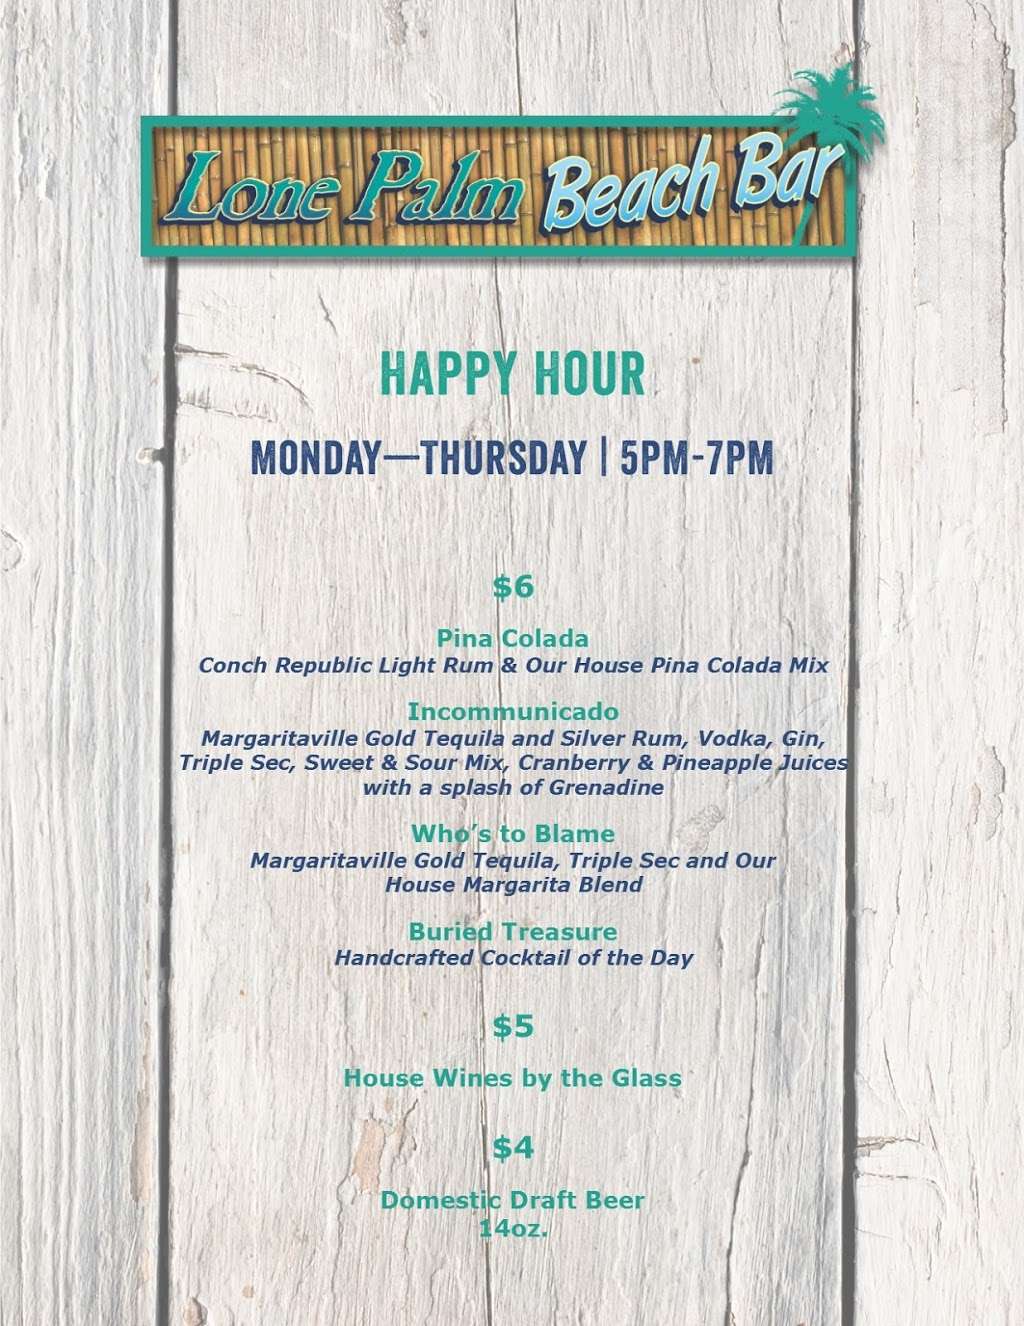 Lone Palm Beach Bar | 1111 N Ocean Dr, Hollywood, FL 33019, USA | Phone: (954) 874-4444